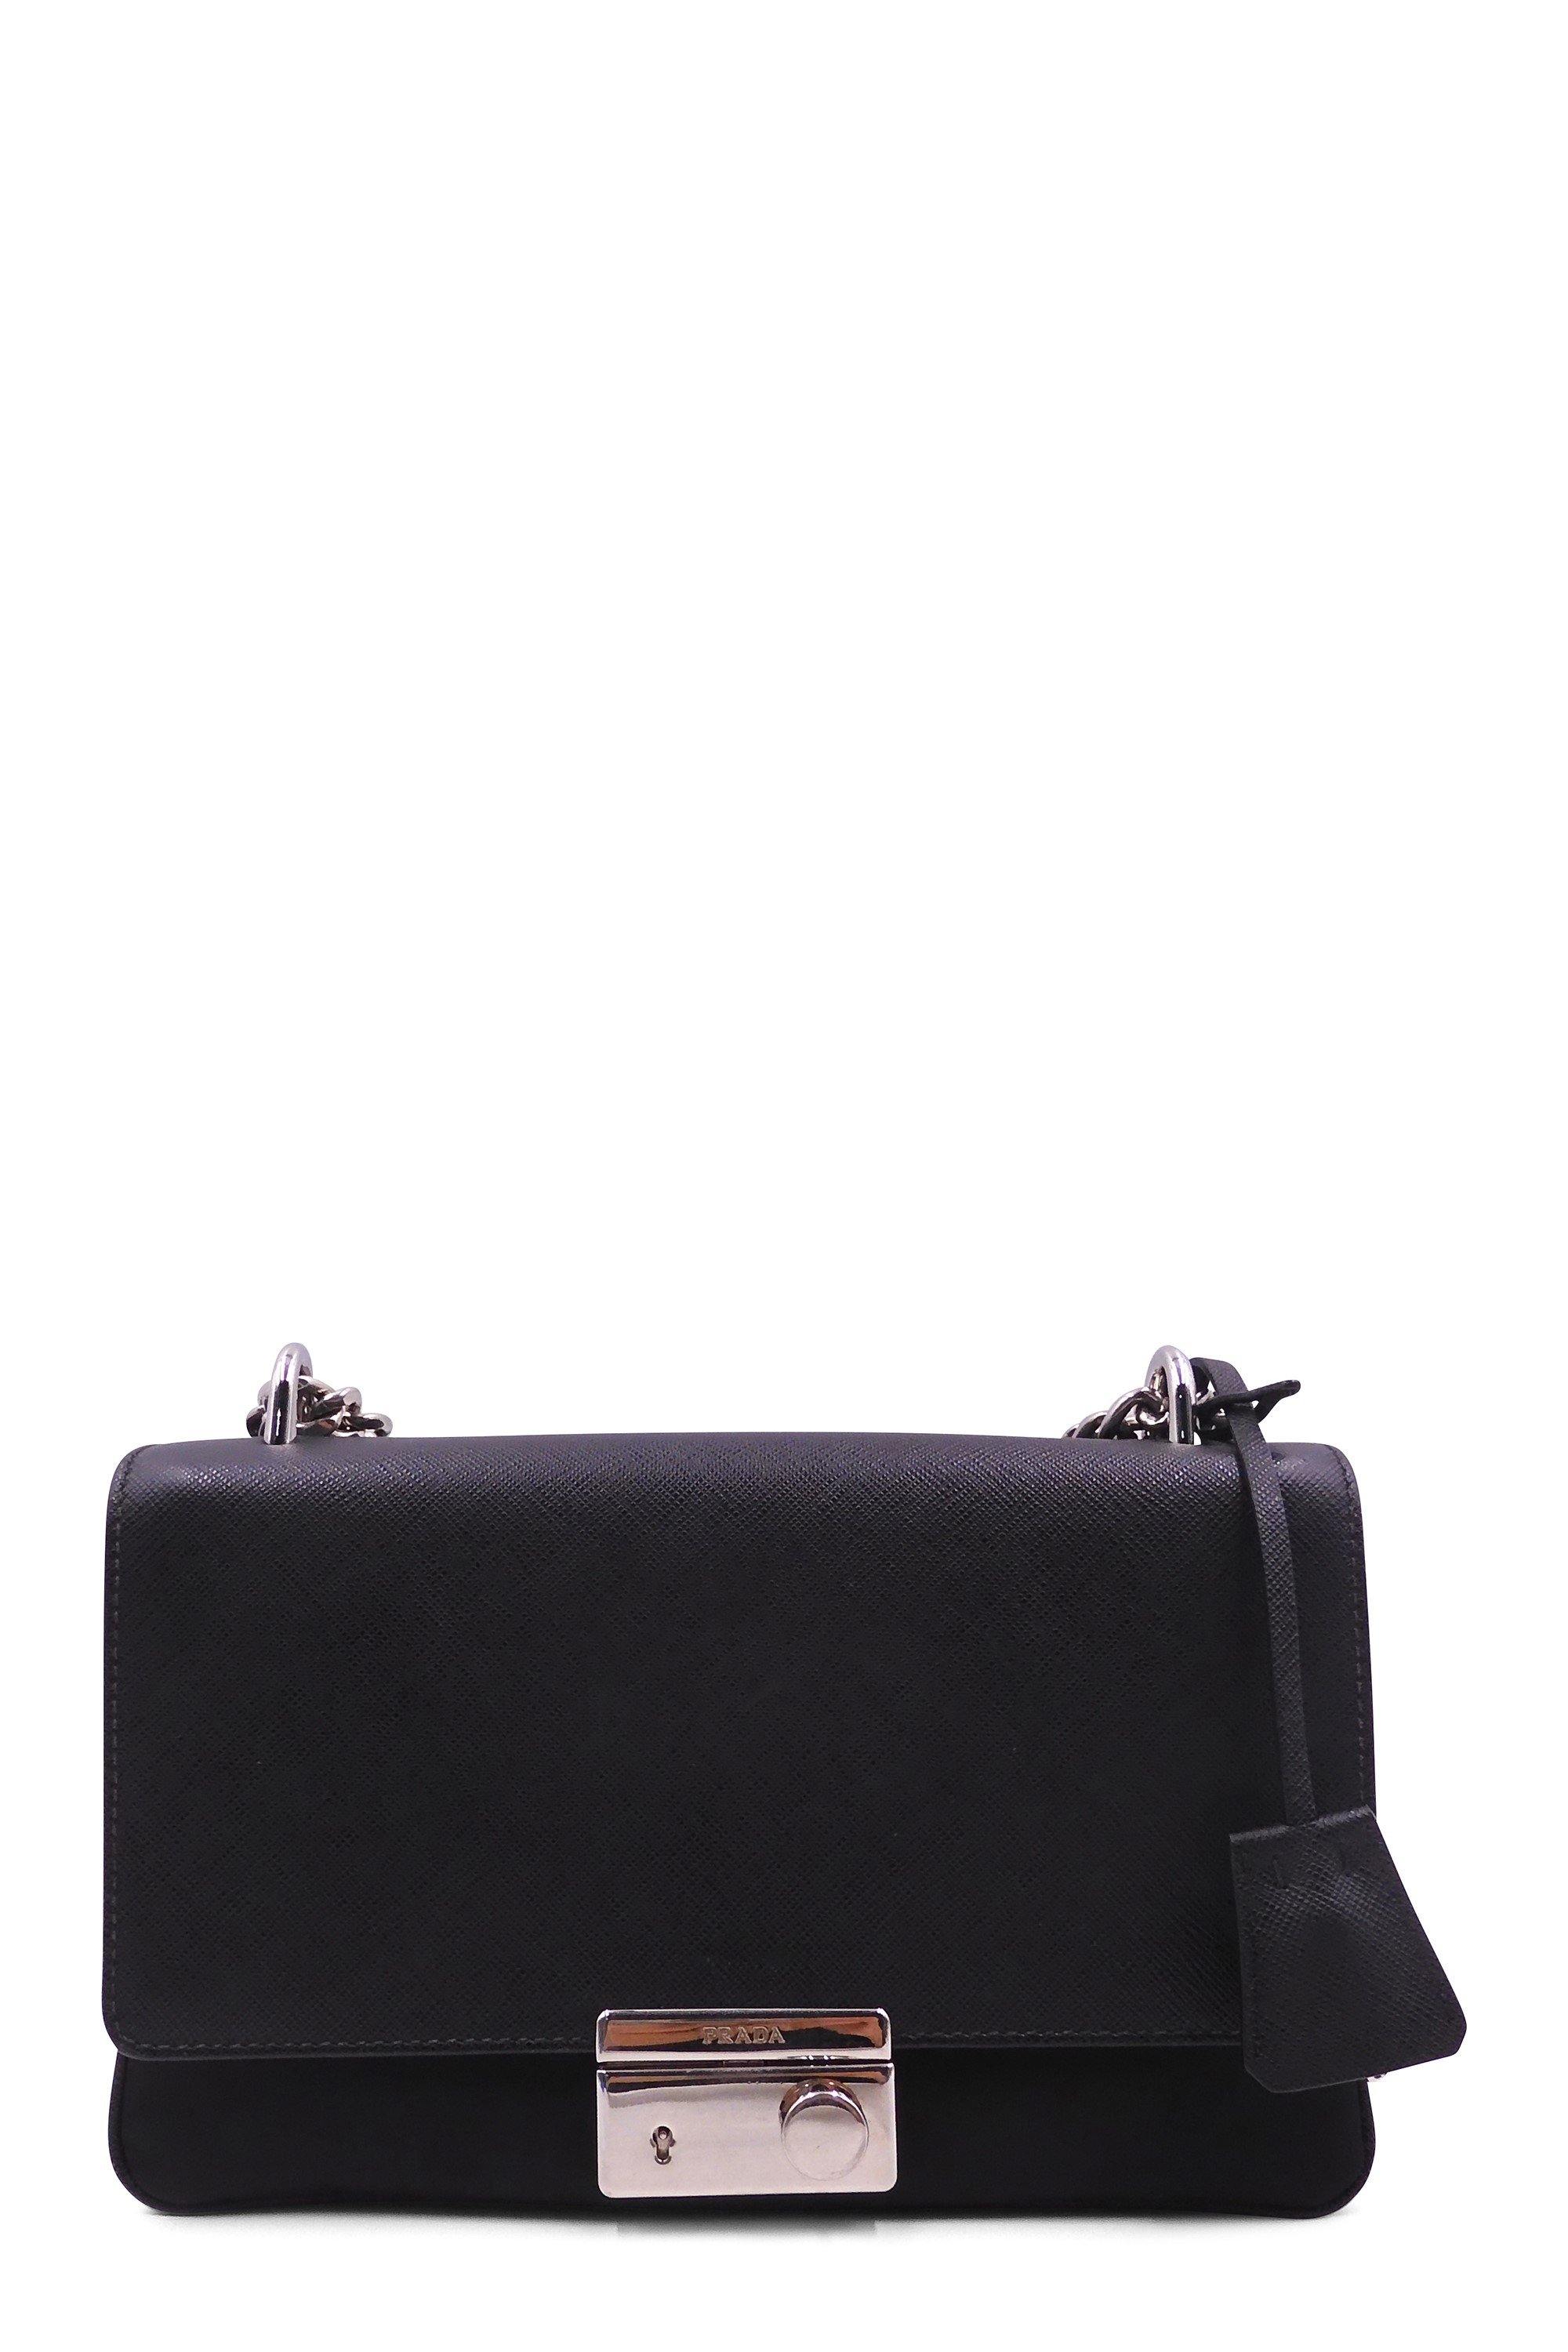 Prada 2022 Saffiano Flap Bag - ShopStyle